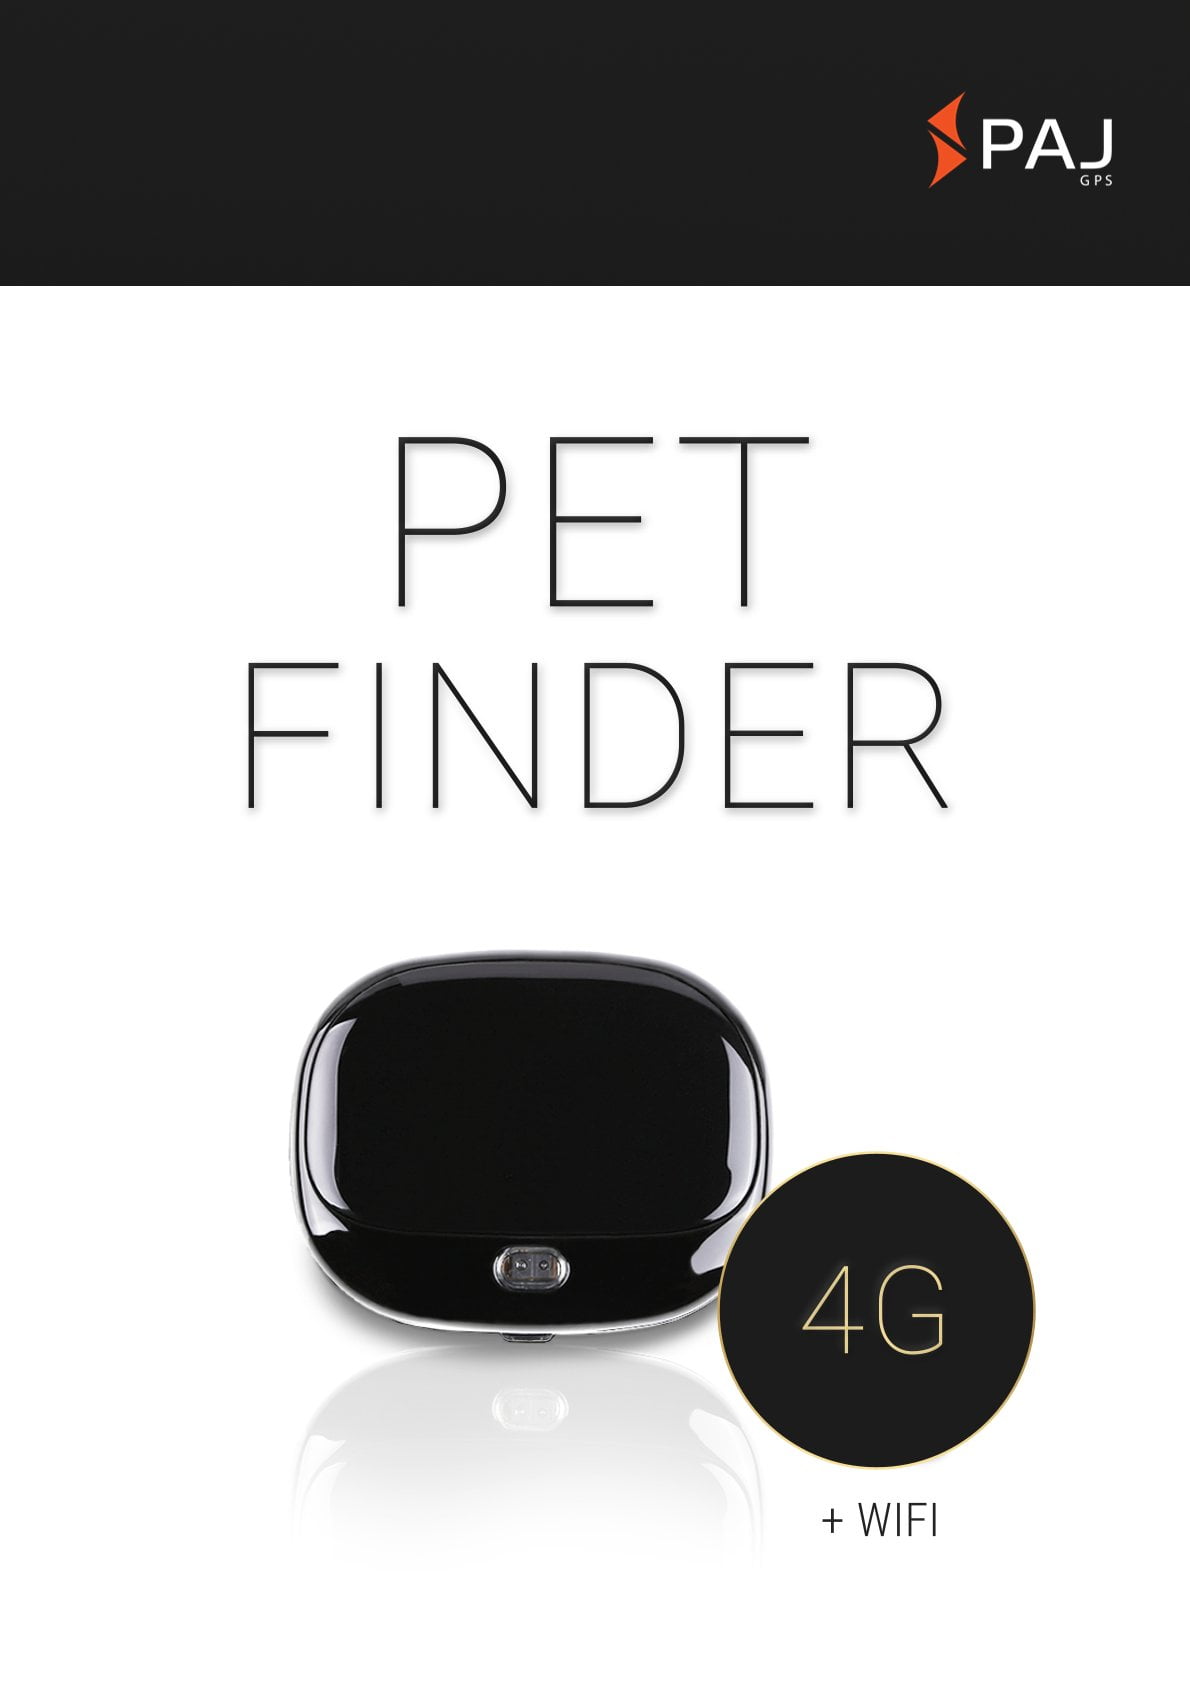 Imagem da capa para folha de dados PET Finder 4G preto